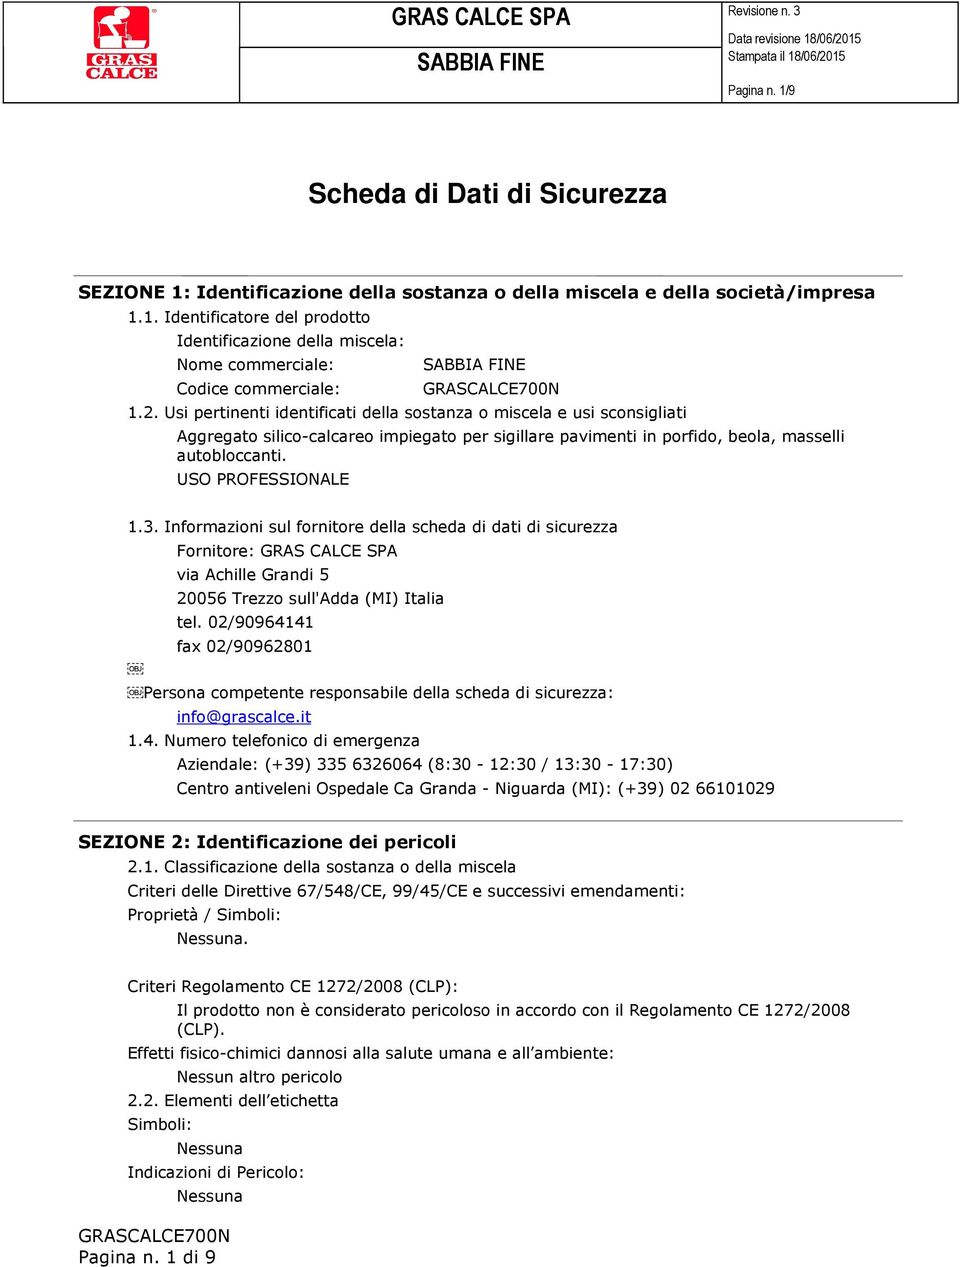 Informazioni sul fornitore della scheda di dati di sicurezza Fornitore: via Achille Grandi 5 20056 Trezzo sull'adda (MI) Italia tel.